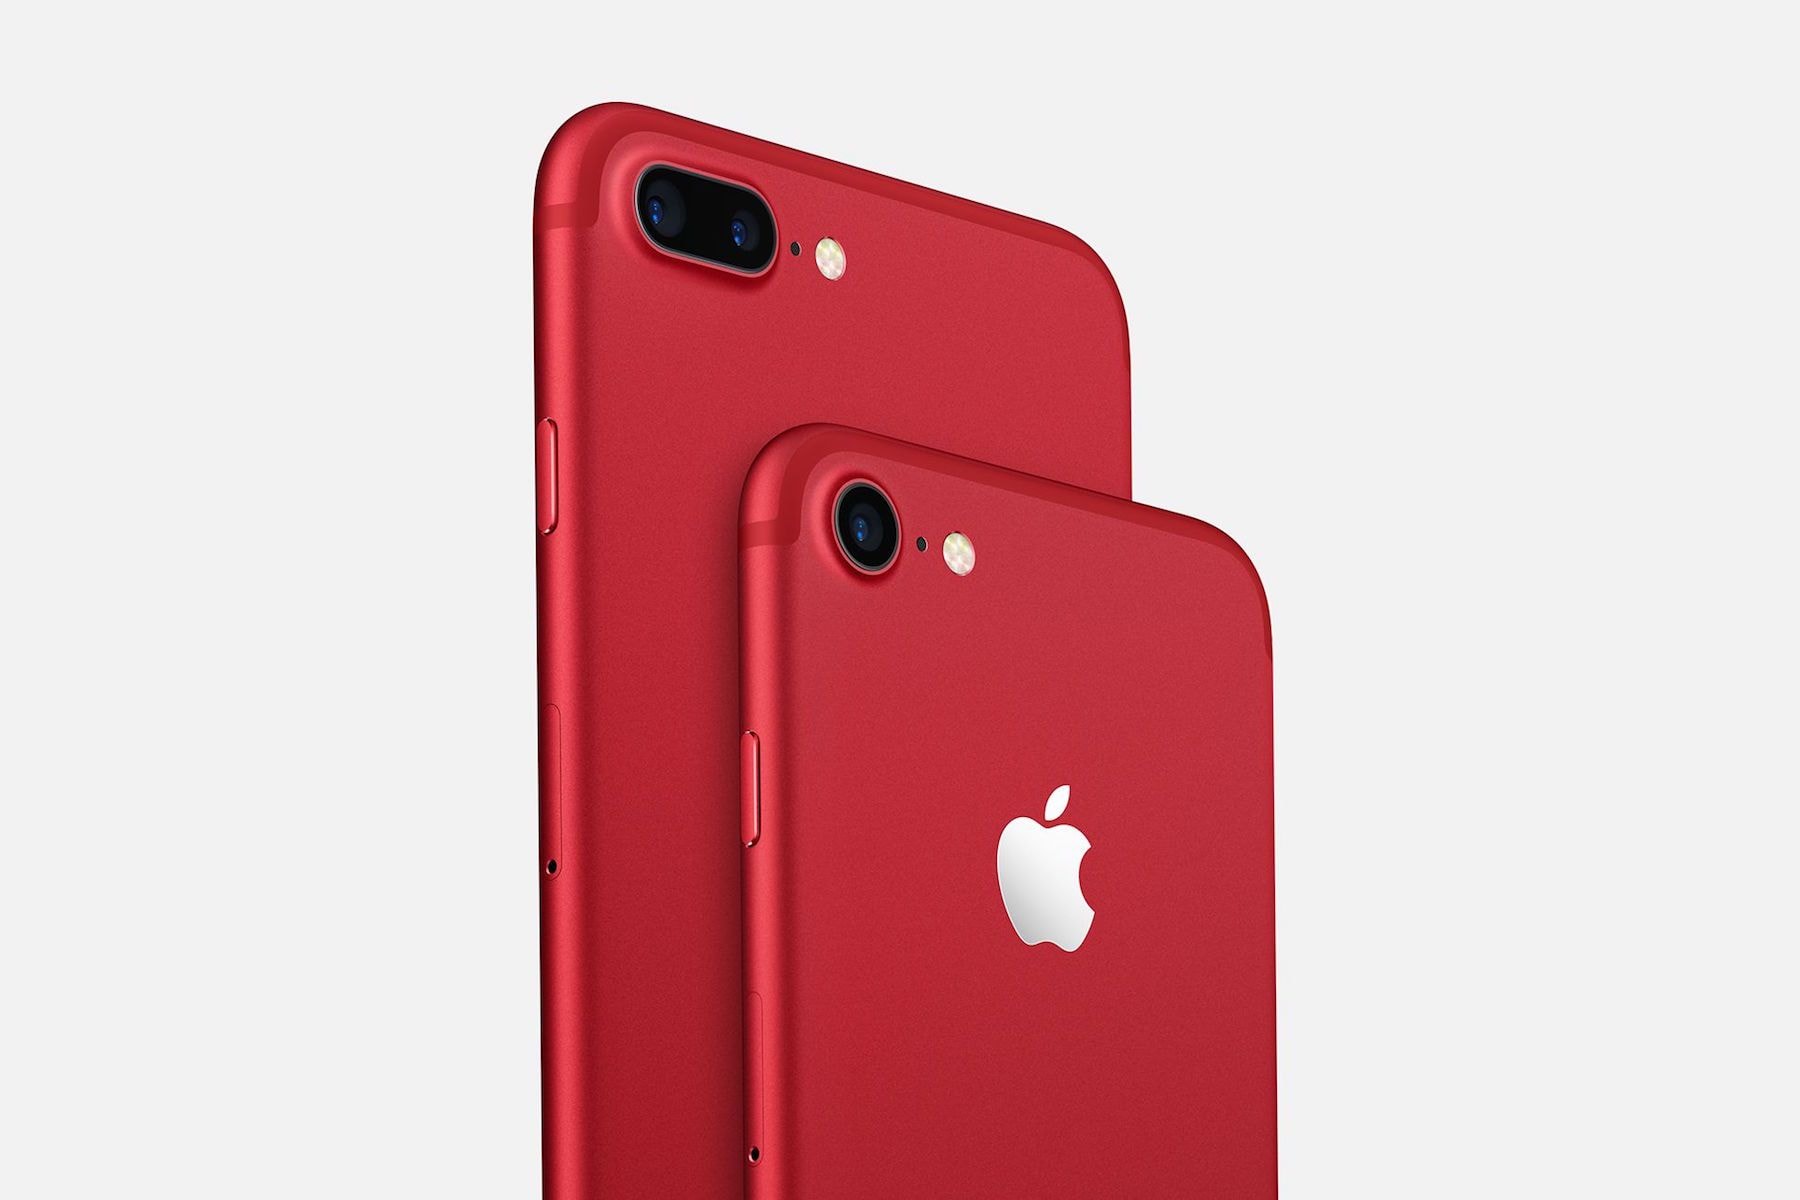 Apple 即將為 iPhone 8 推出 (PRODUCT)RED 紅色特別版